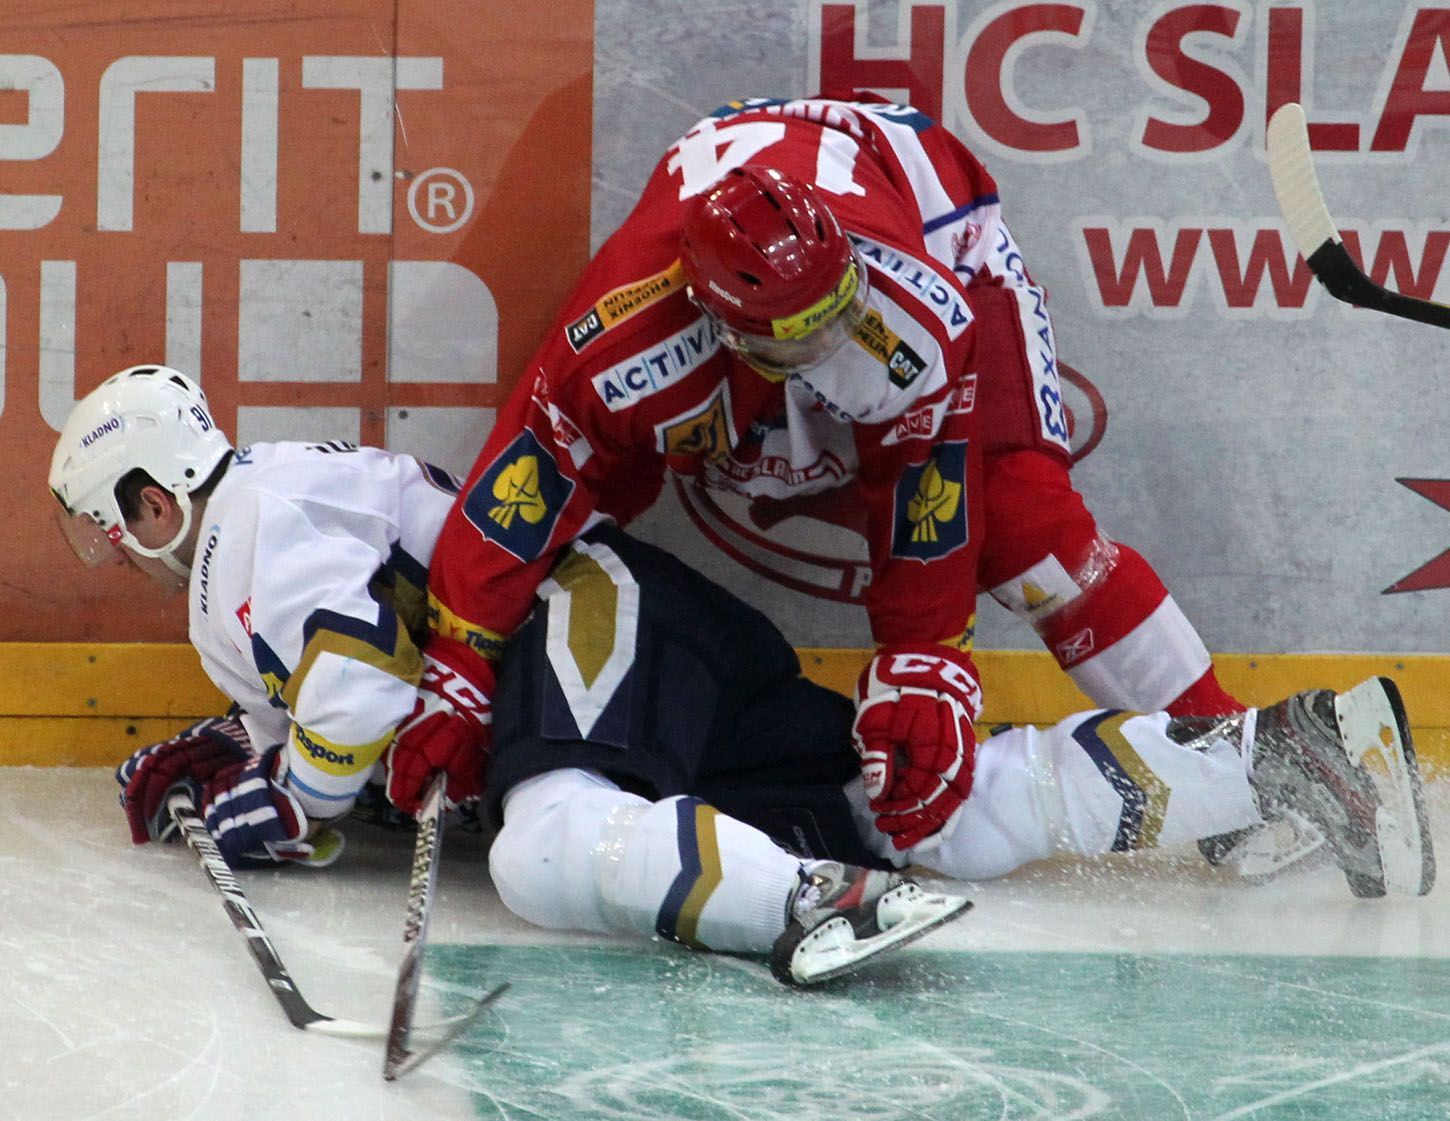 Hokejisté Slavie v utkání 23. kola Tipsport extraligy 2012/13 proti Kladnu.